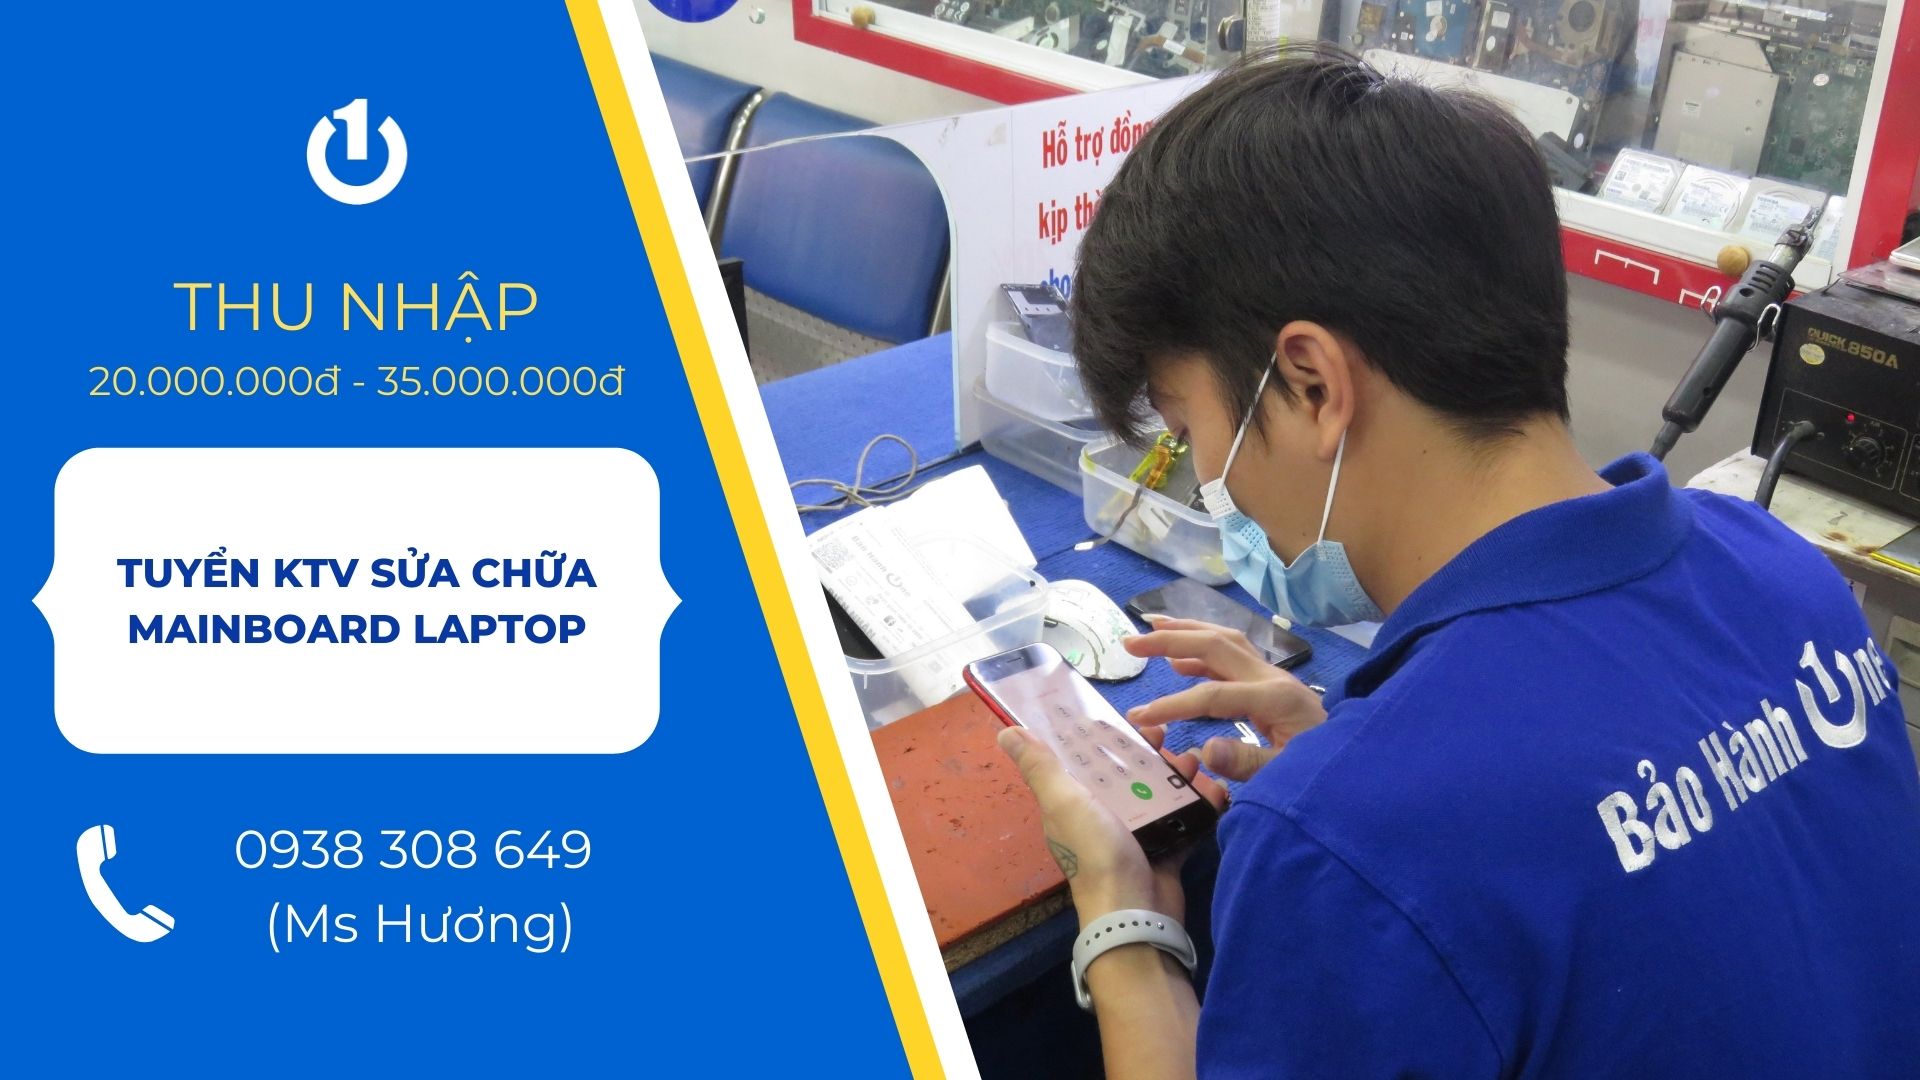 Tuyển Kỹ Thuật Viên Sửa Chữa Mainboard Laptop Lương 20-35 Triệu